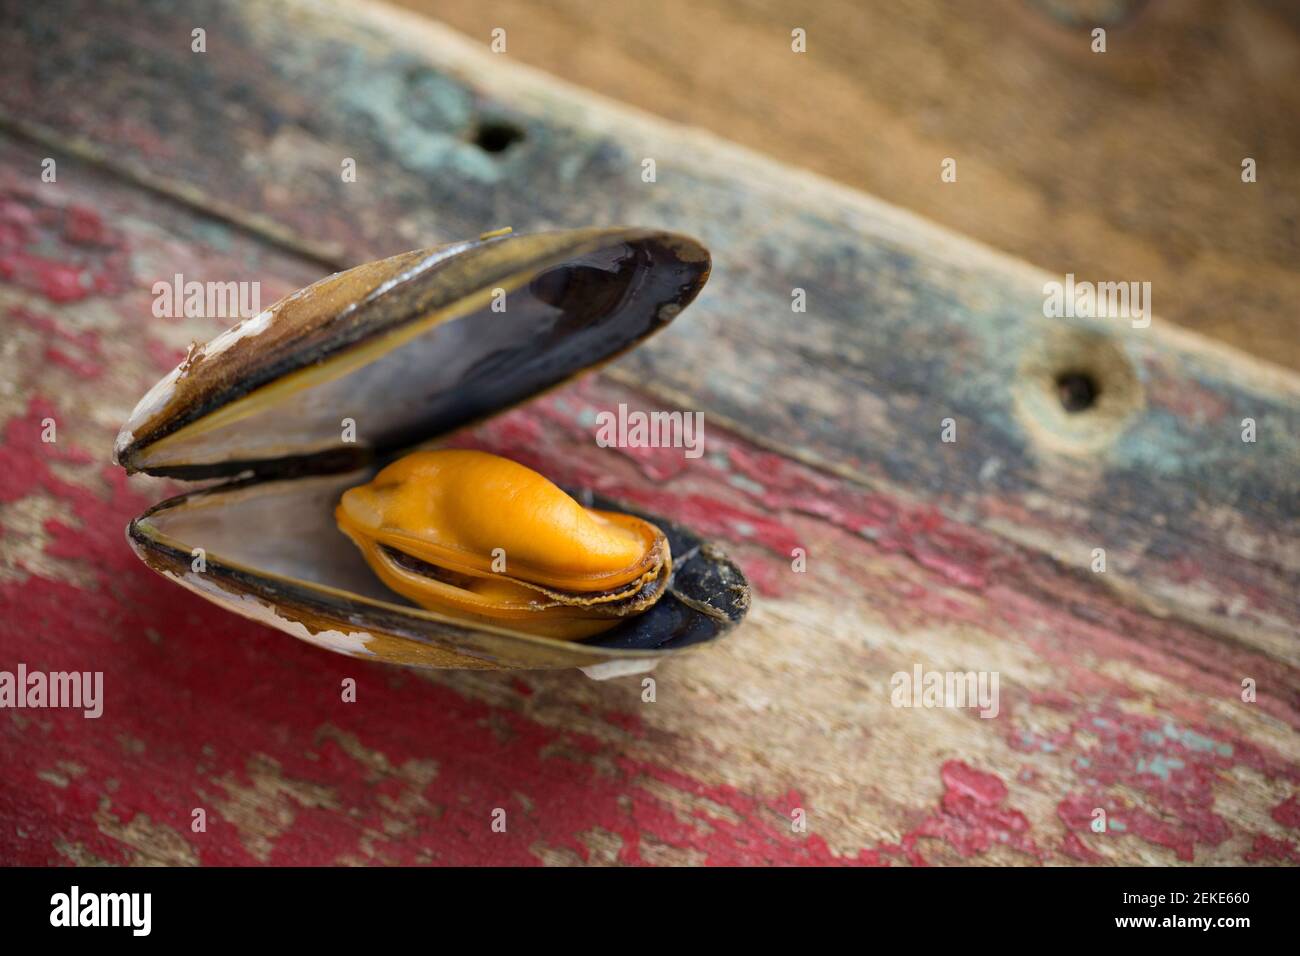 Eine einzelne gekochte schottische Muschel, die aus einem Waitrose Supermarkt gekauft wurde. Der Brexit am 31 2020. Januar verursachte Störungen bei einigen britischen Schalentieren Stockfoto